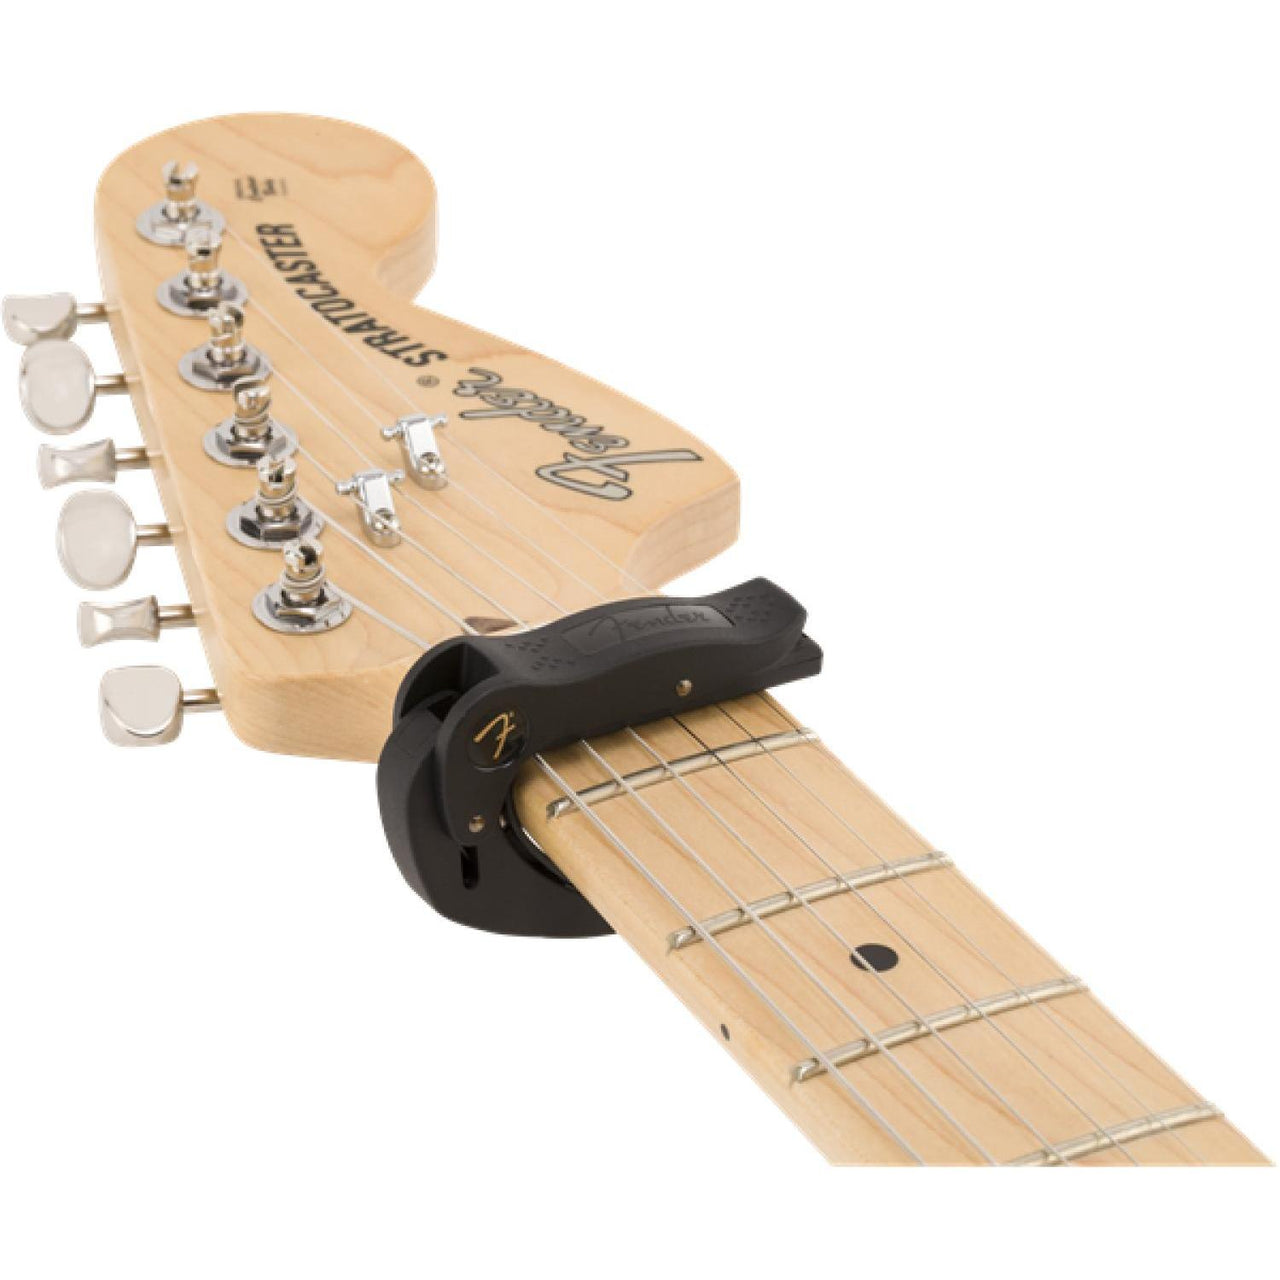 Capo Fender Smart Capo- Fingerstyle, 0990401003